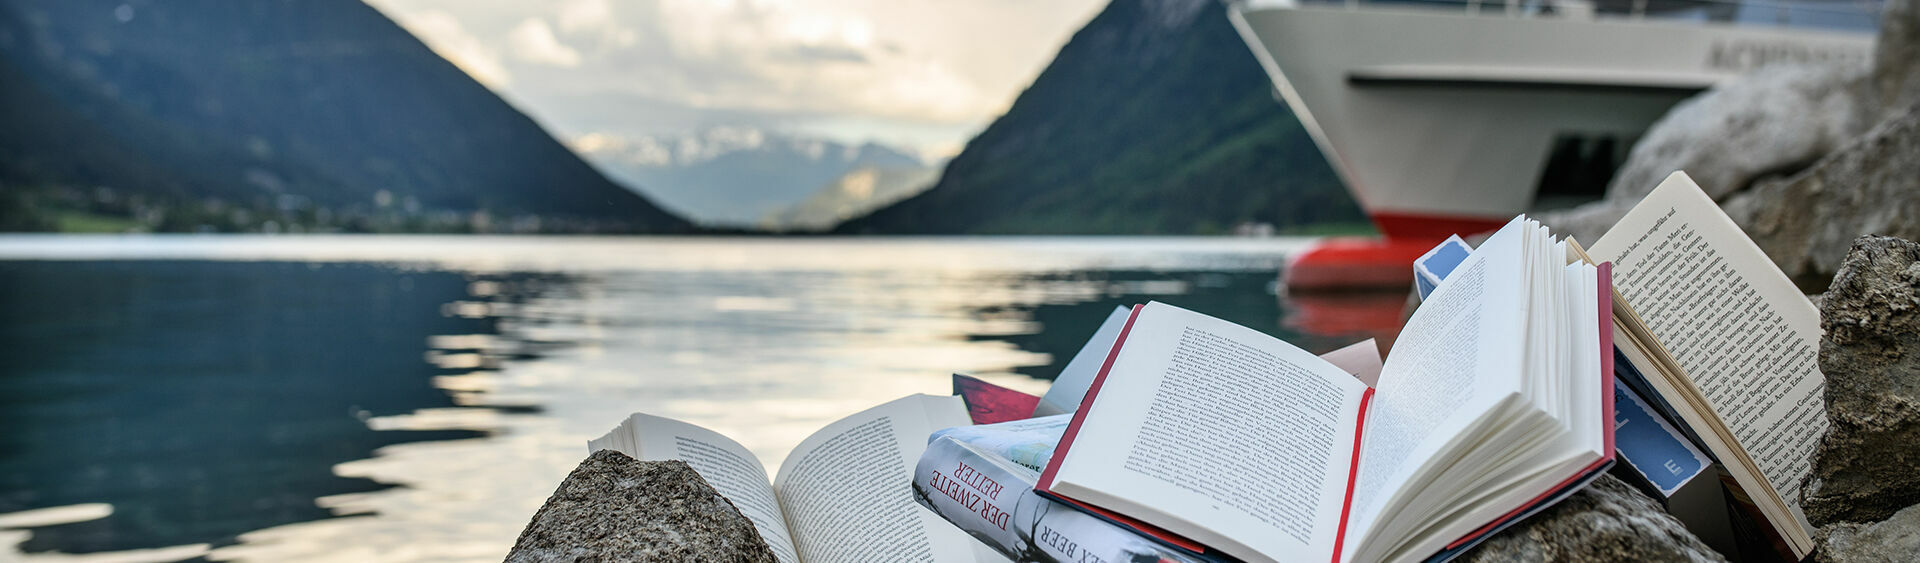 Lesenswerte Bücher der achensee.literatour 2018. Sie wurden am Ufer mit Blick auf den See und die Achenseeschifffahrt in Szene gesetzt.